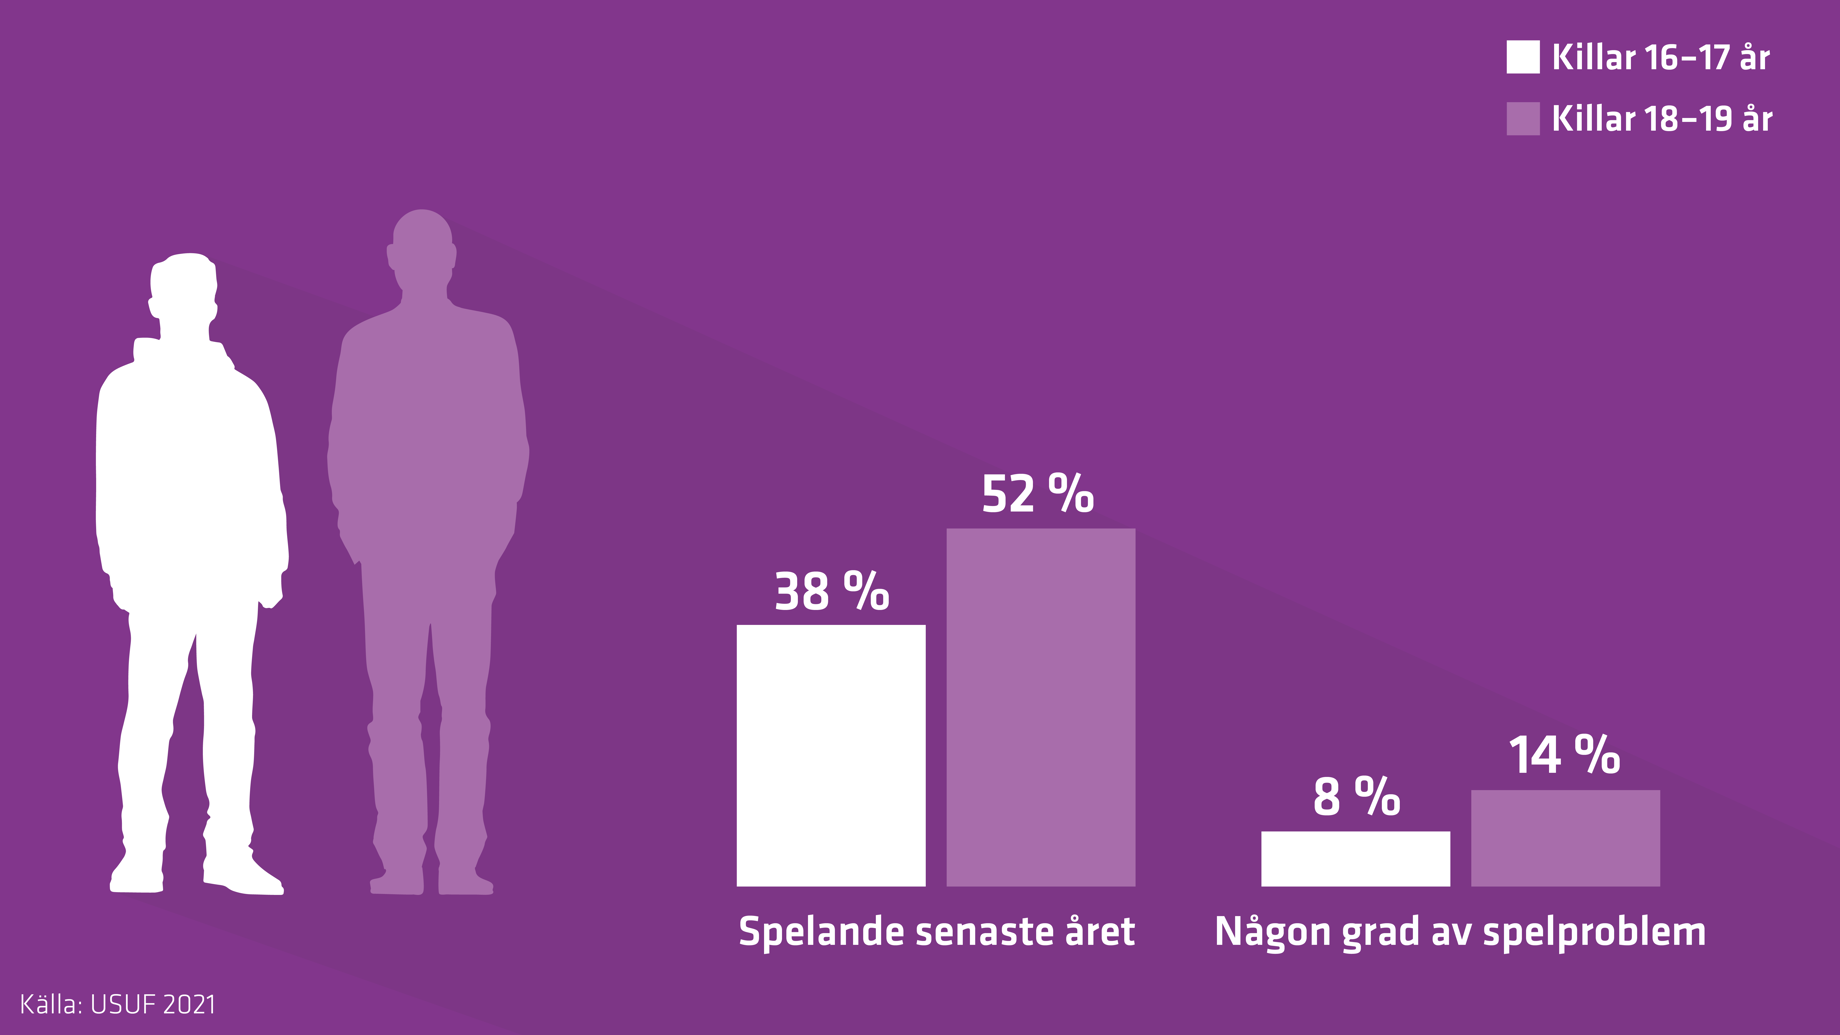 Staplarna i figuren visar att spelandet och någon grad av spelproblem är högre bland killar 18-19 år än bland killar 16-17 år.